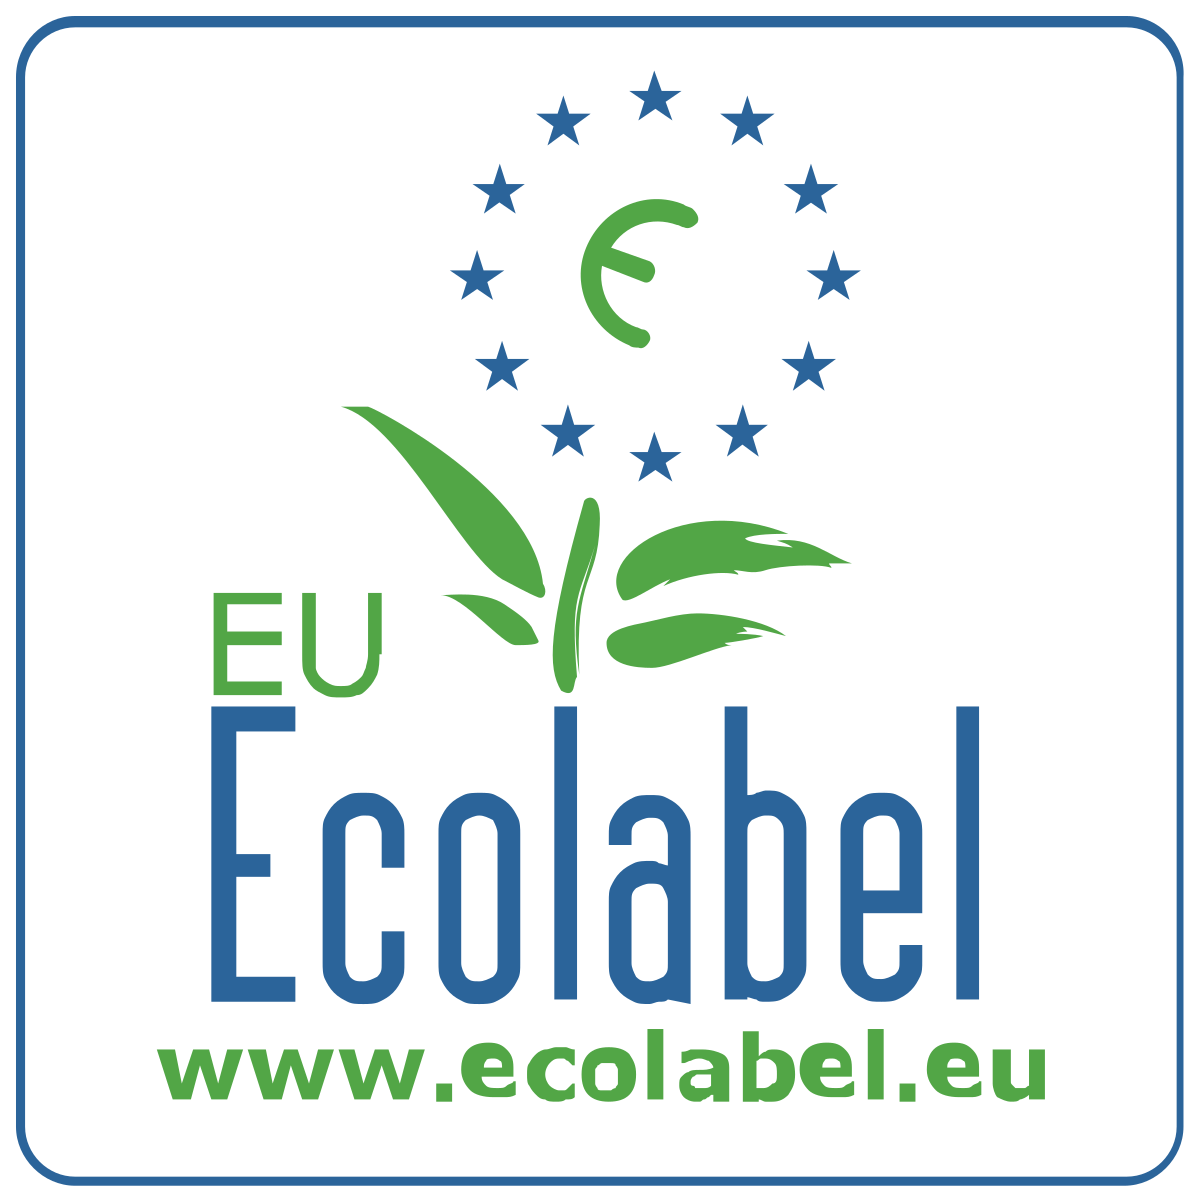 EU_Ecolabel_logo.svg